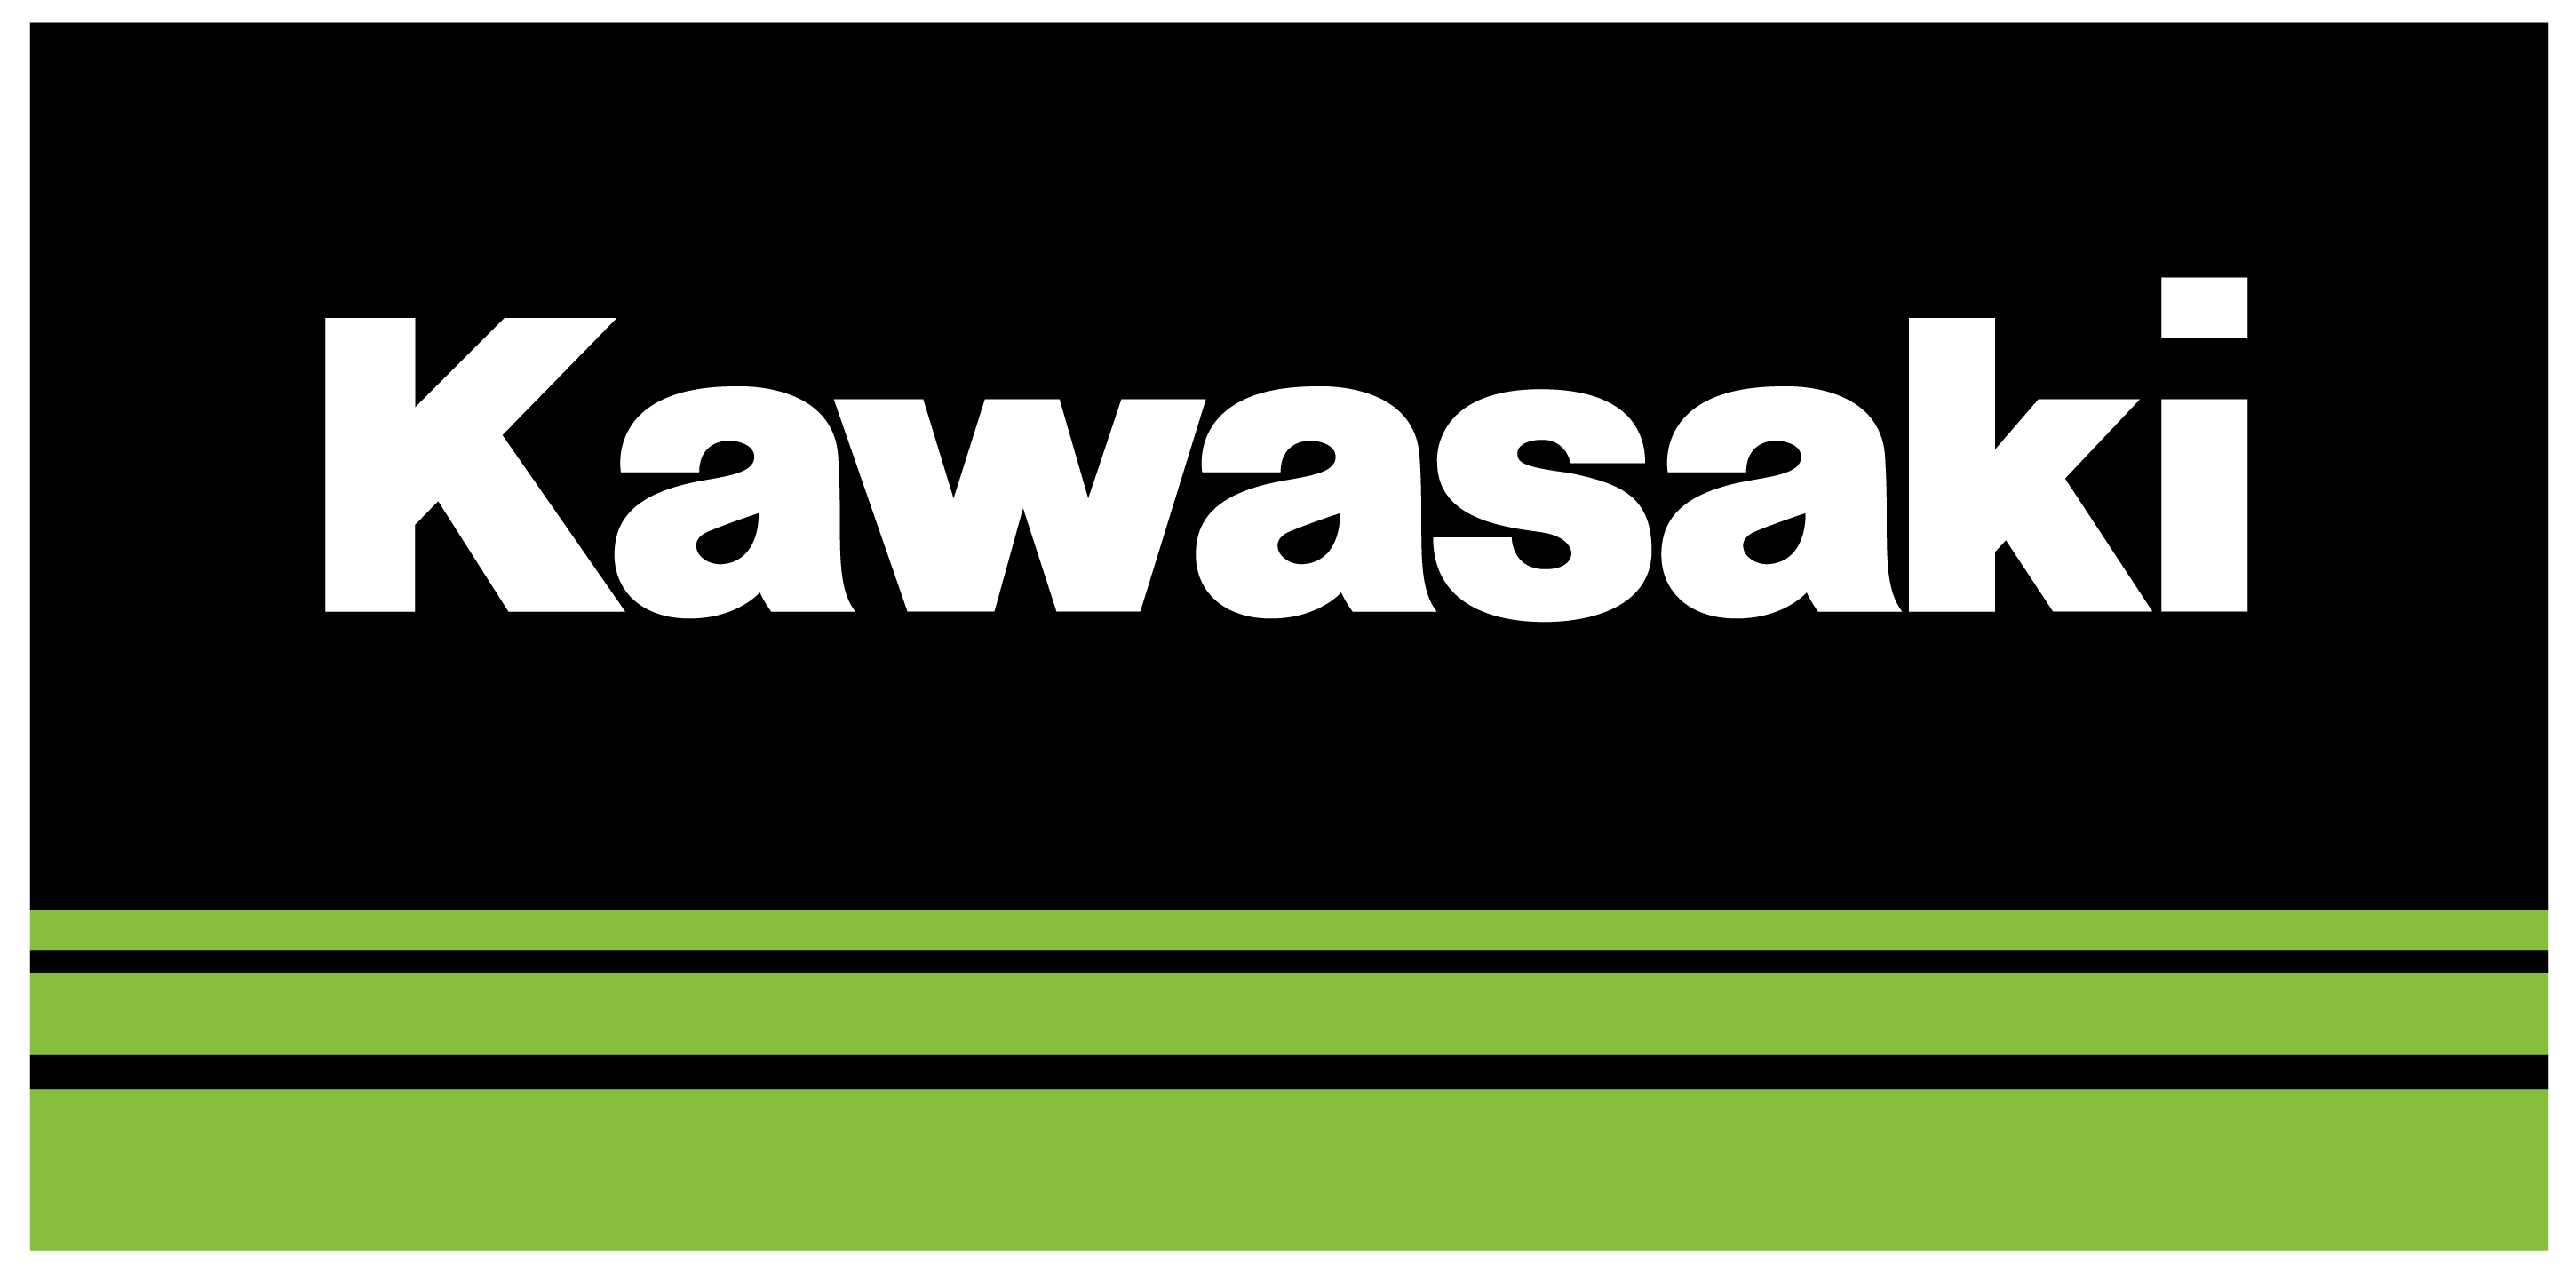 kawasaki logo history meaning motorcycle brands #33745